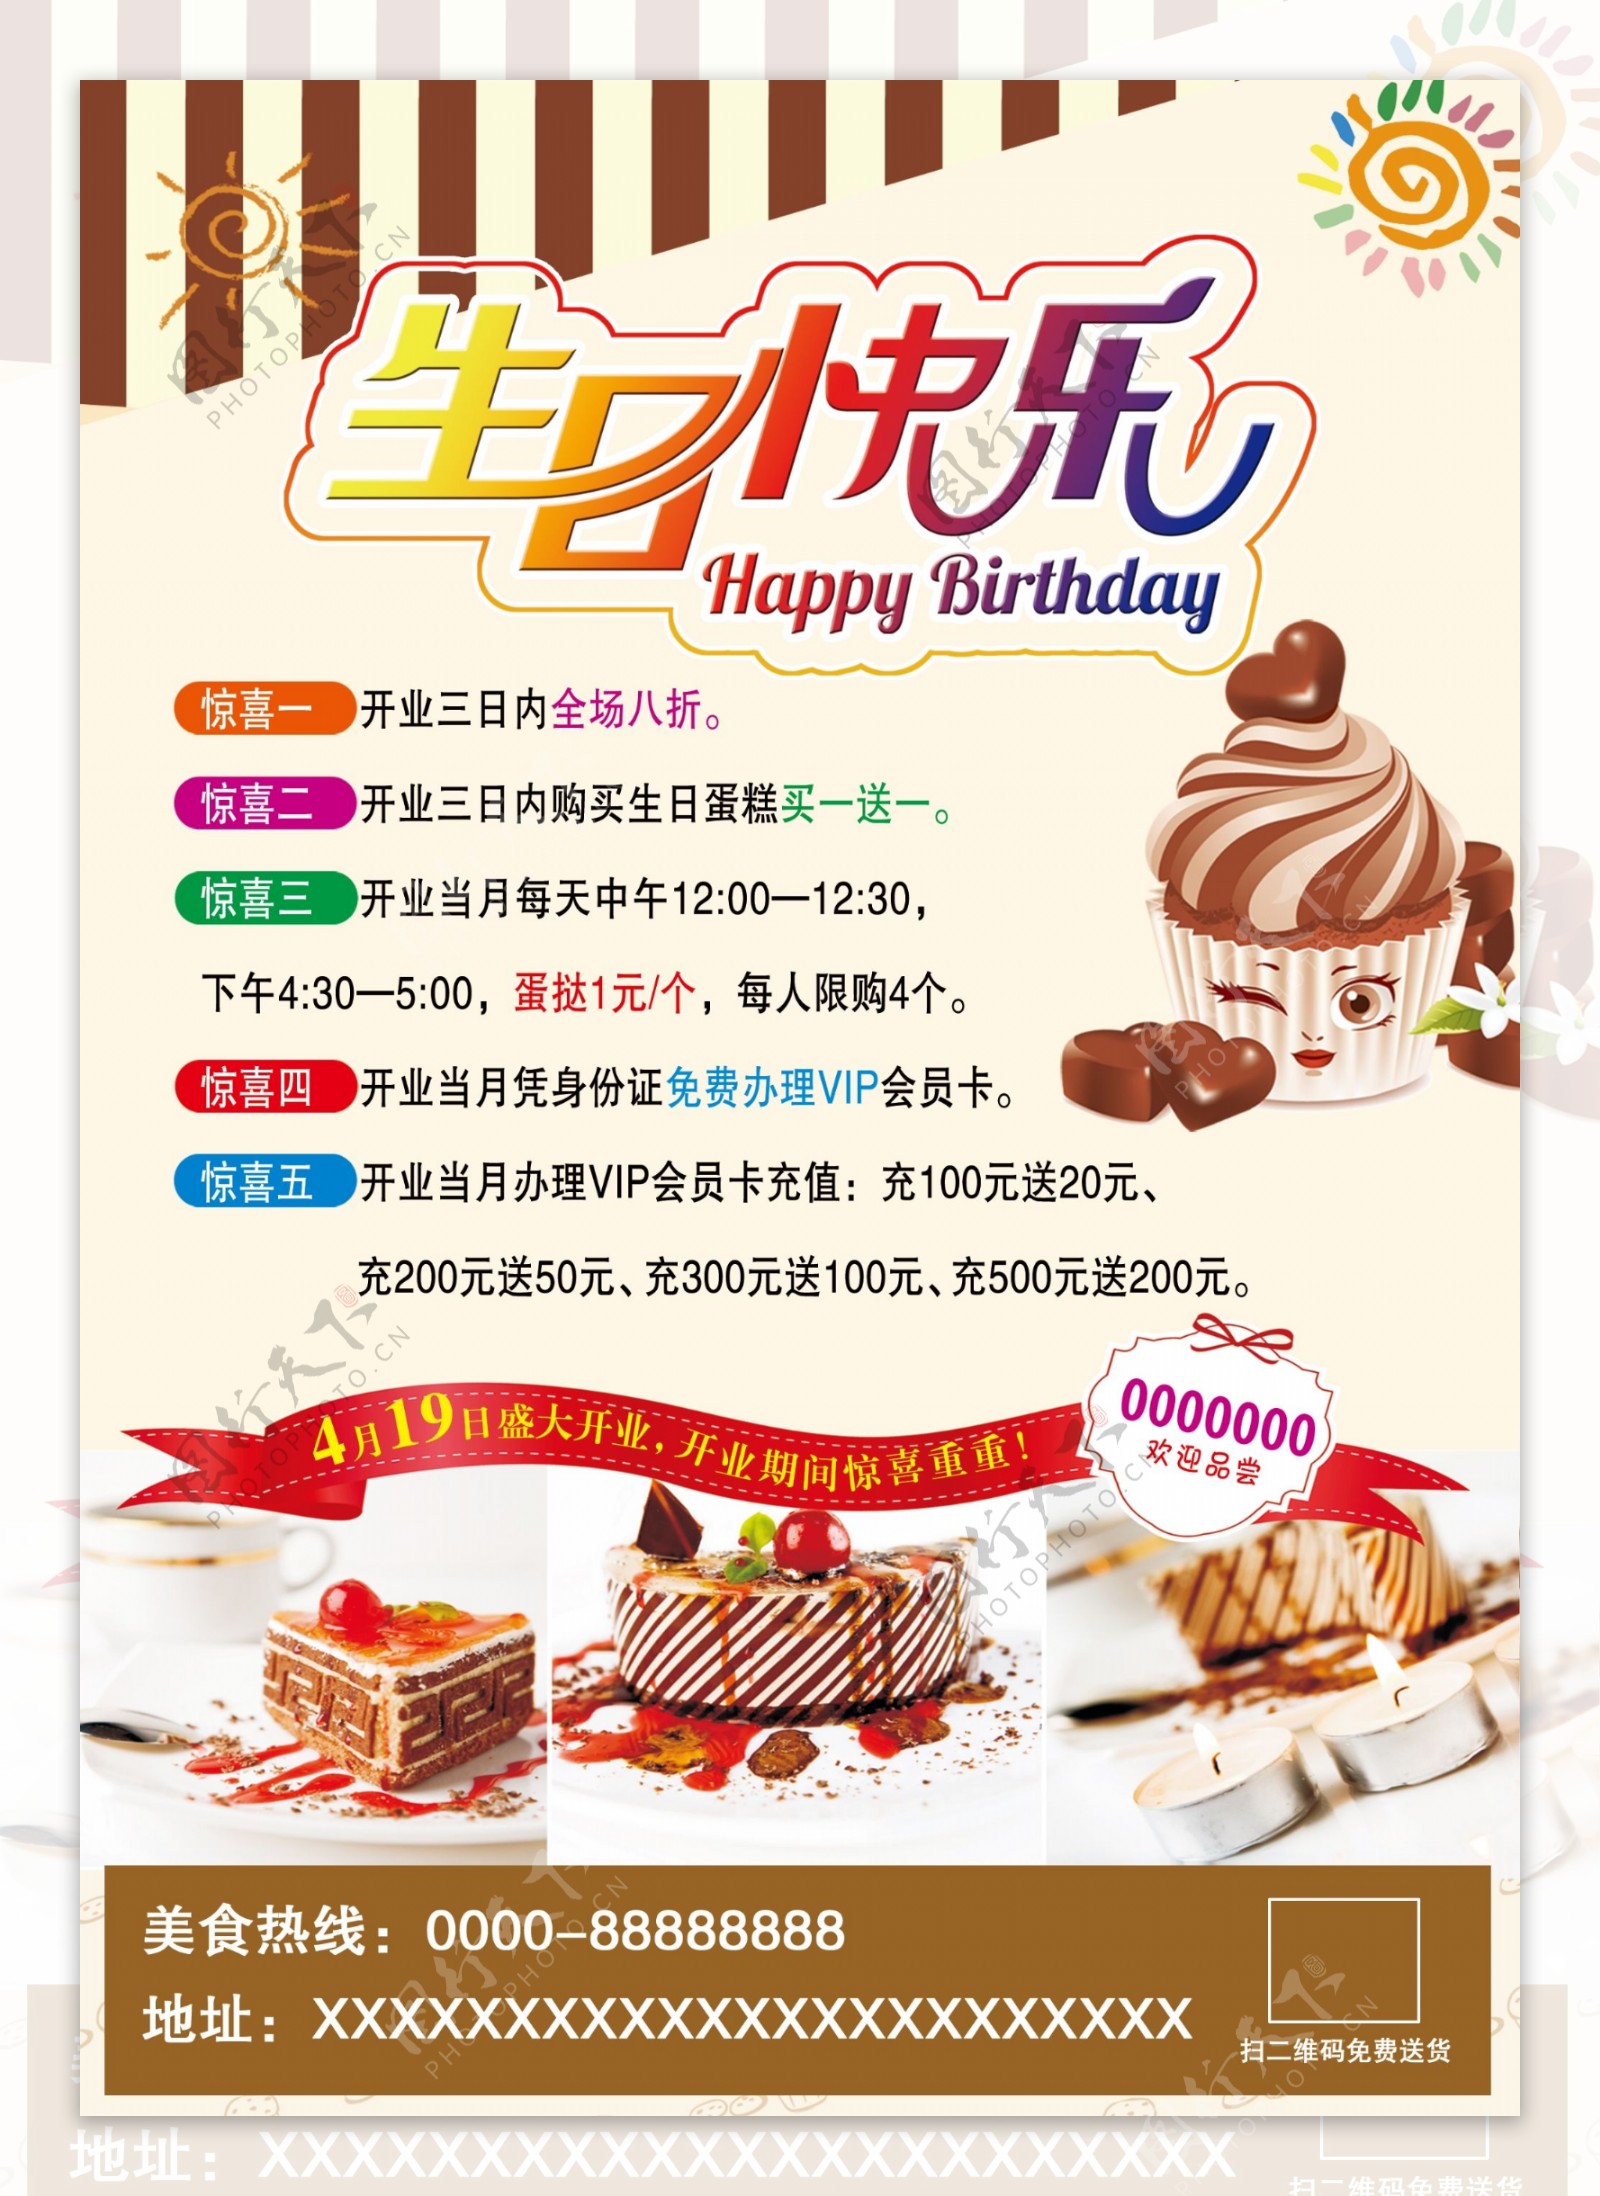 生日蛋糕彩页海报版面素材内容